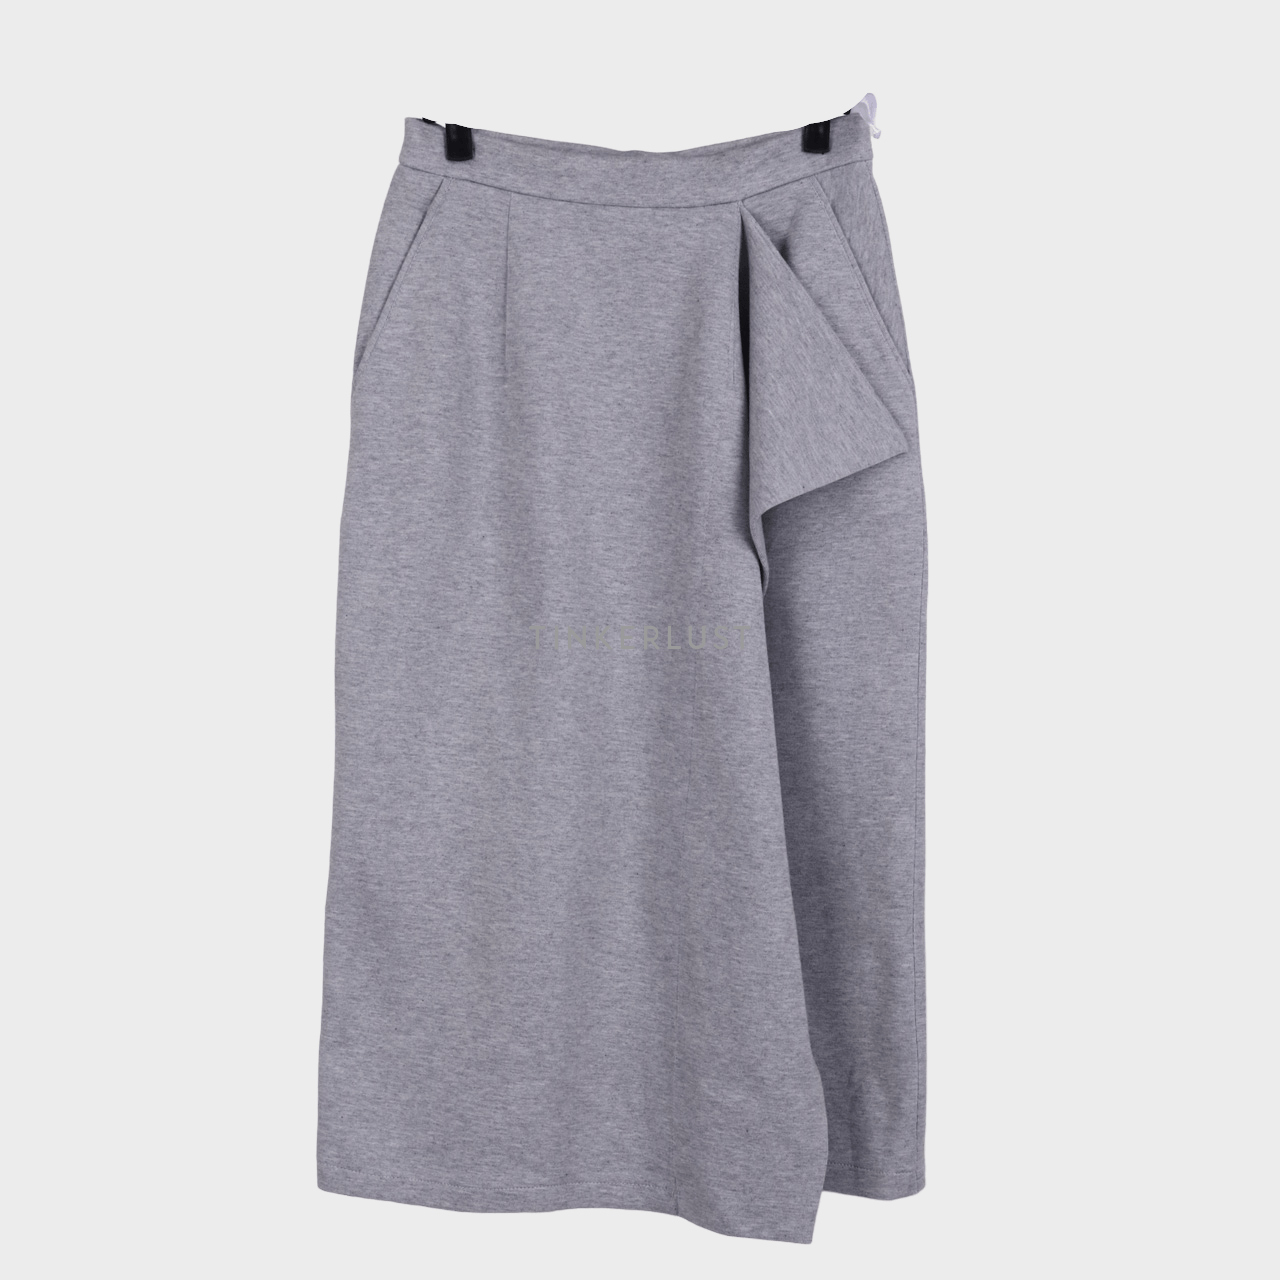 Touchup Atelier Grey Midi Skirt